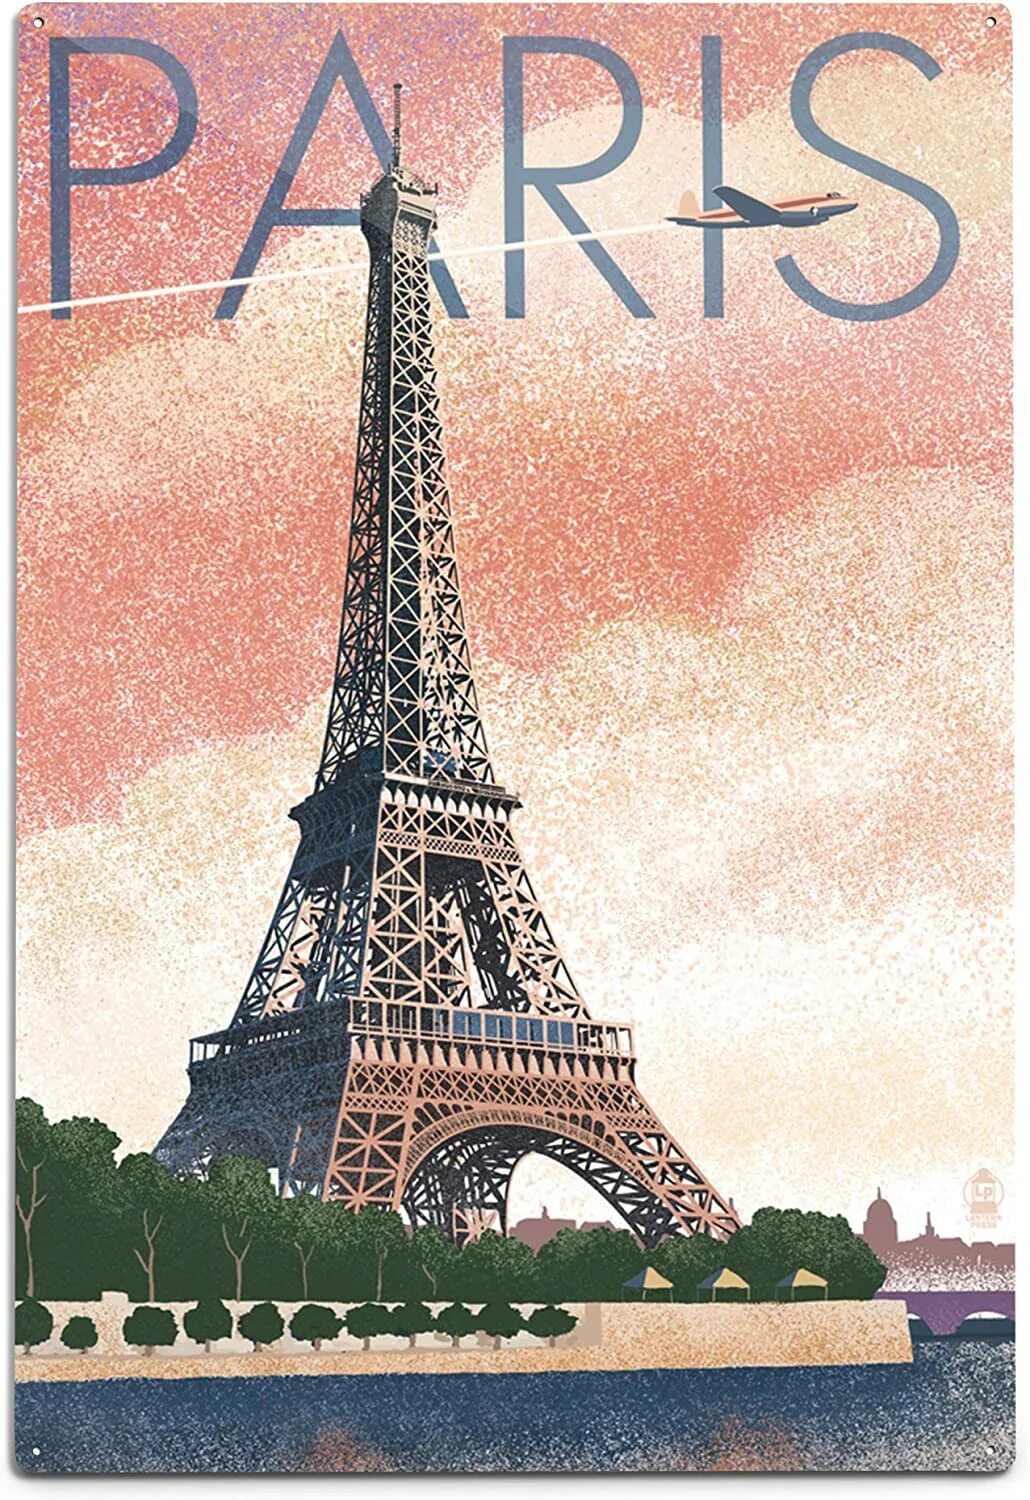 Плакат Париж. Постер Франция. Постер Париж. Французские постеры. Плакат французский